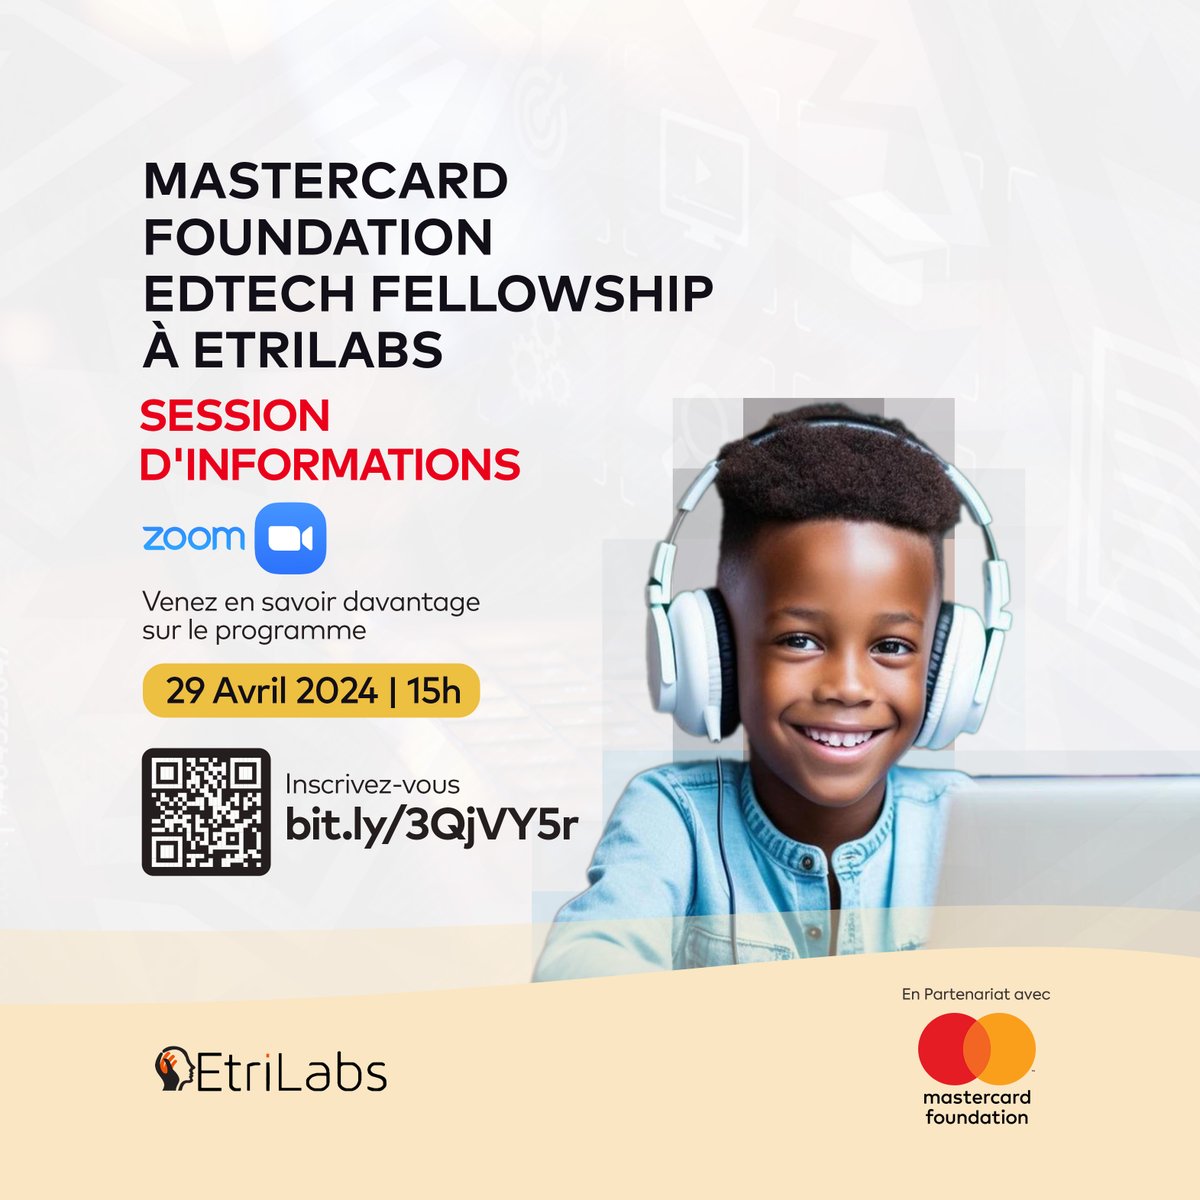 📢Rejoignez nous le 𝟮𝟵 𝗮𝘃𝗿𝗶𝗹 à 𝟭𝟱𝗵 𝗚𝗠𝗧 pour une session d'informations en ligne sur le Programme Mastercard Foundation EdTech Fellowship à EtriLabs. Lors de cette session, il s'agira essentiellement de communiquer sur les objectifs globaux du Programme, de recueillir